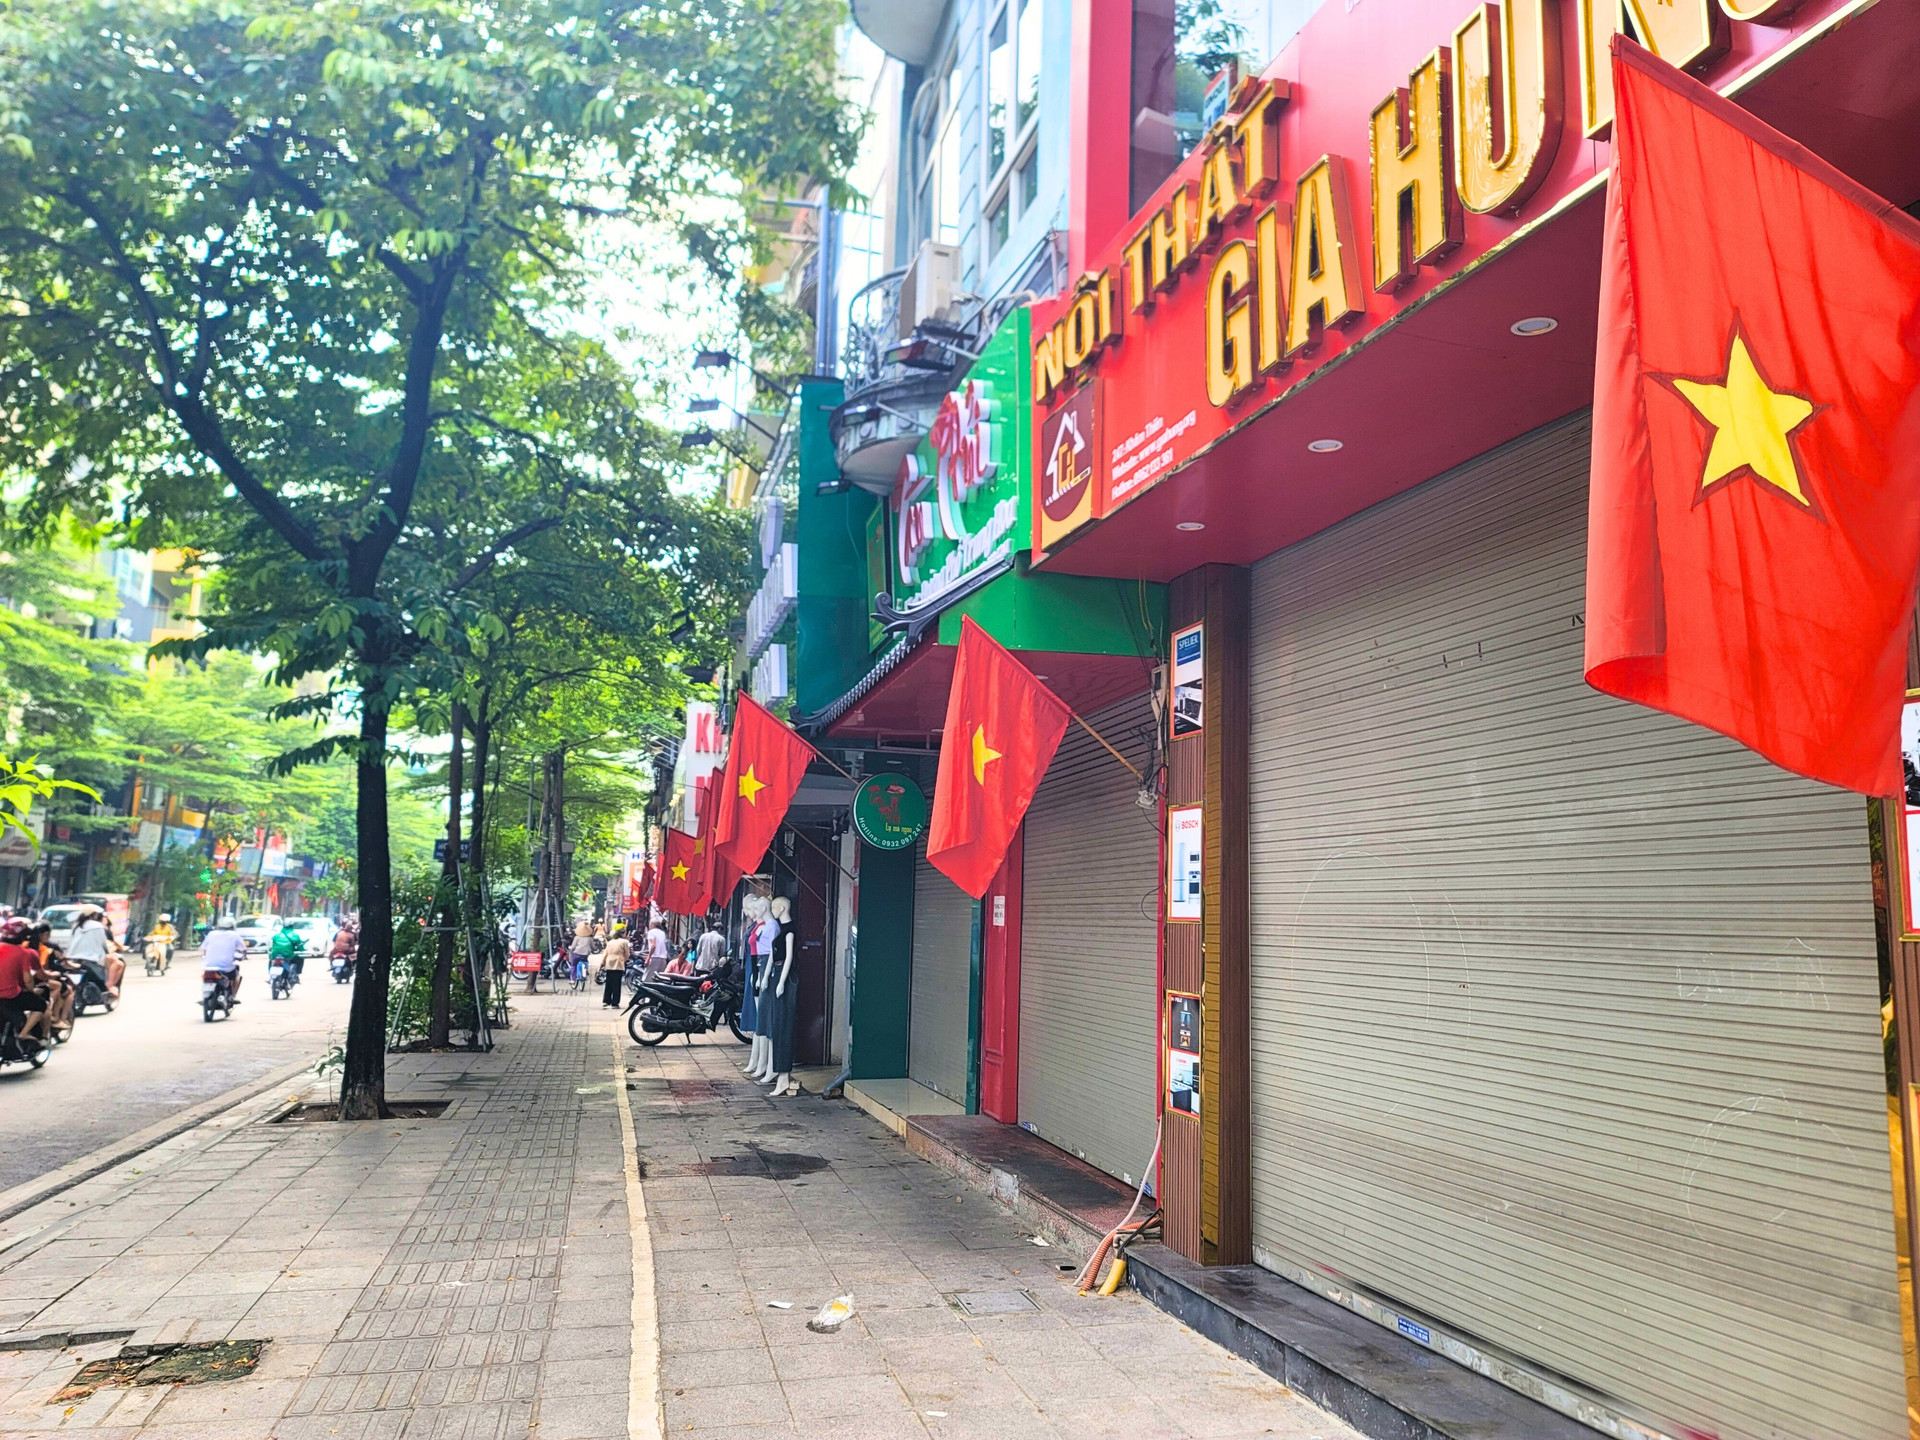 Hoà chung không khí tưng bừng chào mừng 78 năm Cách mạng Tháng Tám và Quốc Khánh 2/9, người dân ở nhiều khu phố treo cờ tổ quốc trước cổng nhà.